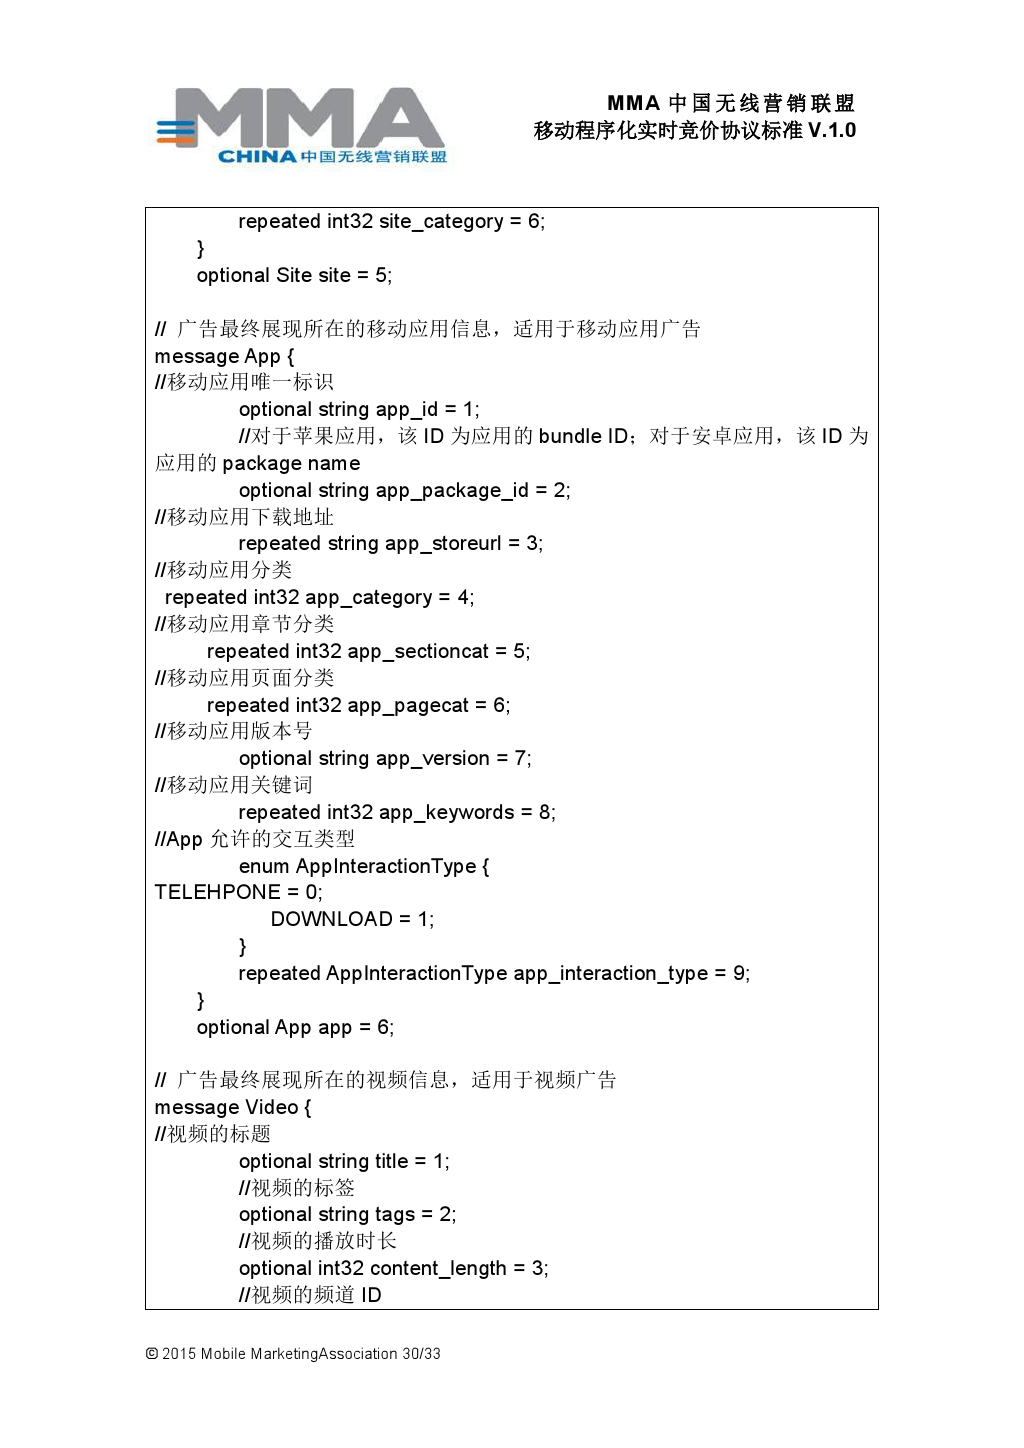 MMA中国无线营销联盟移动程序化实时竞价协议标准V.1.0_000031